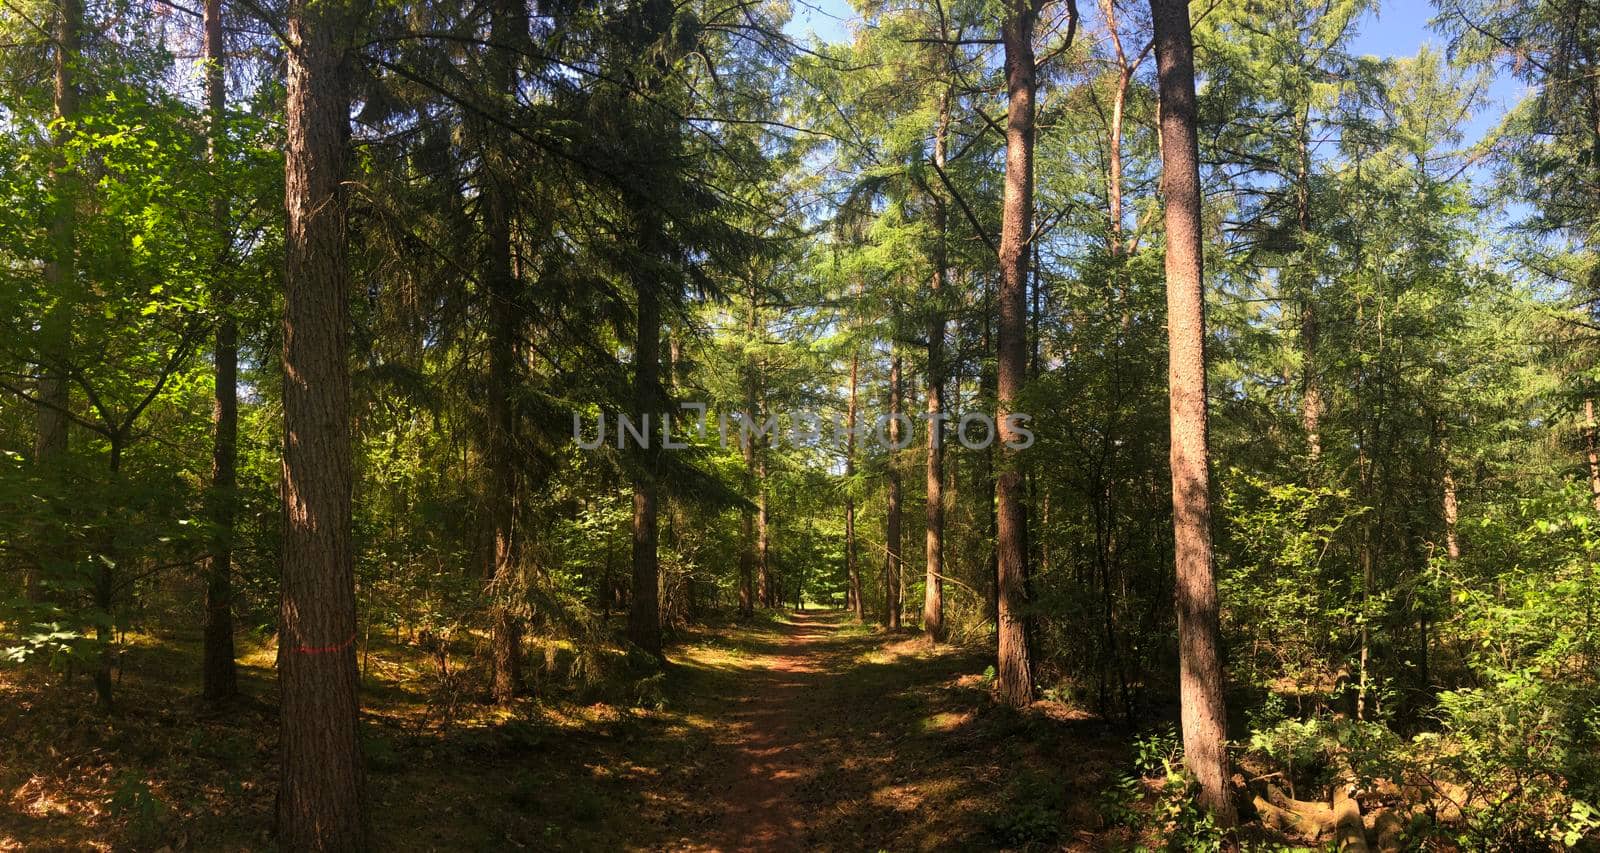 Path through the forest around Hardenberg by traveltelly